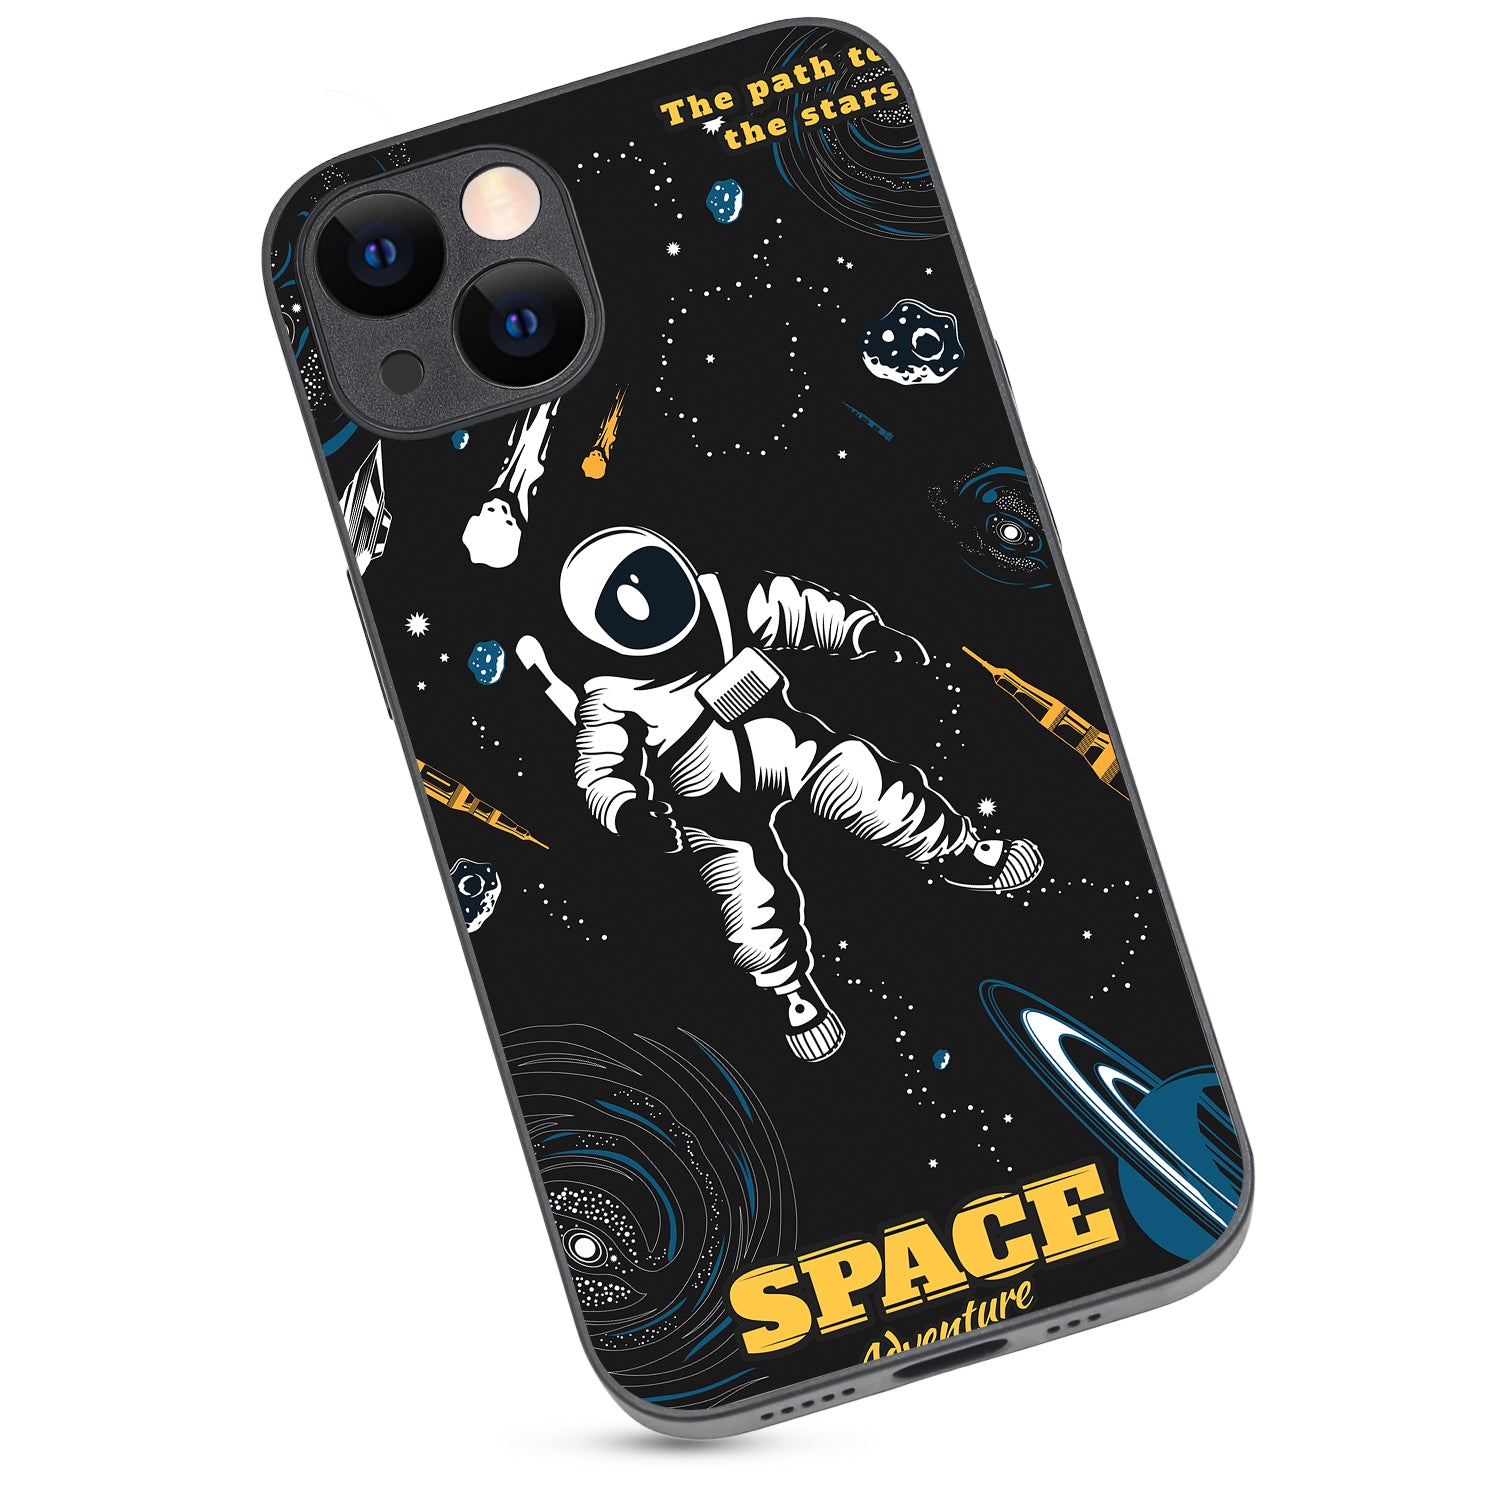 Astronaut Travel iPhone 13 Case